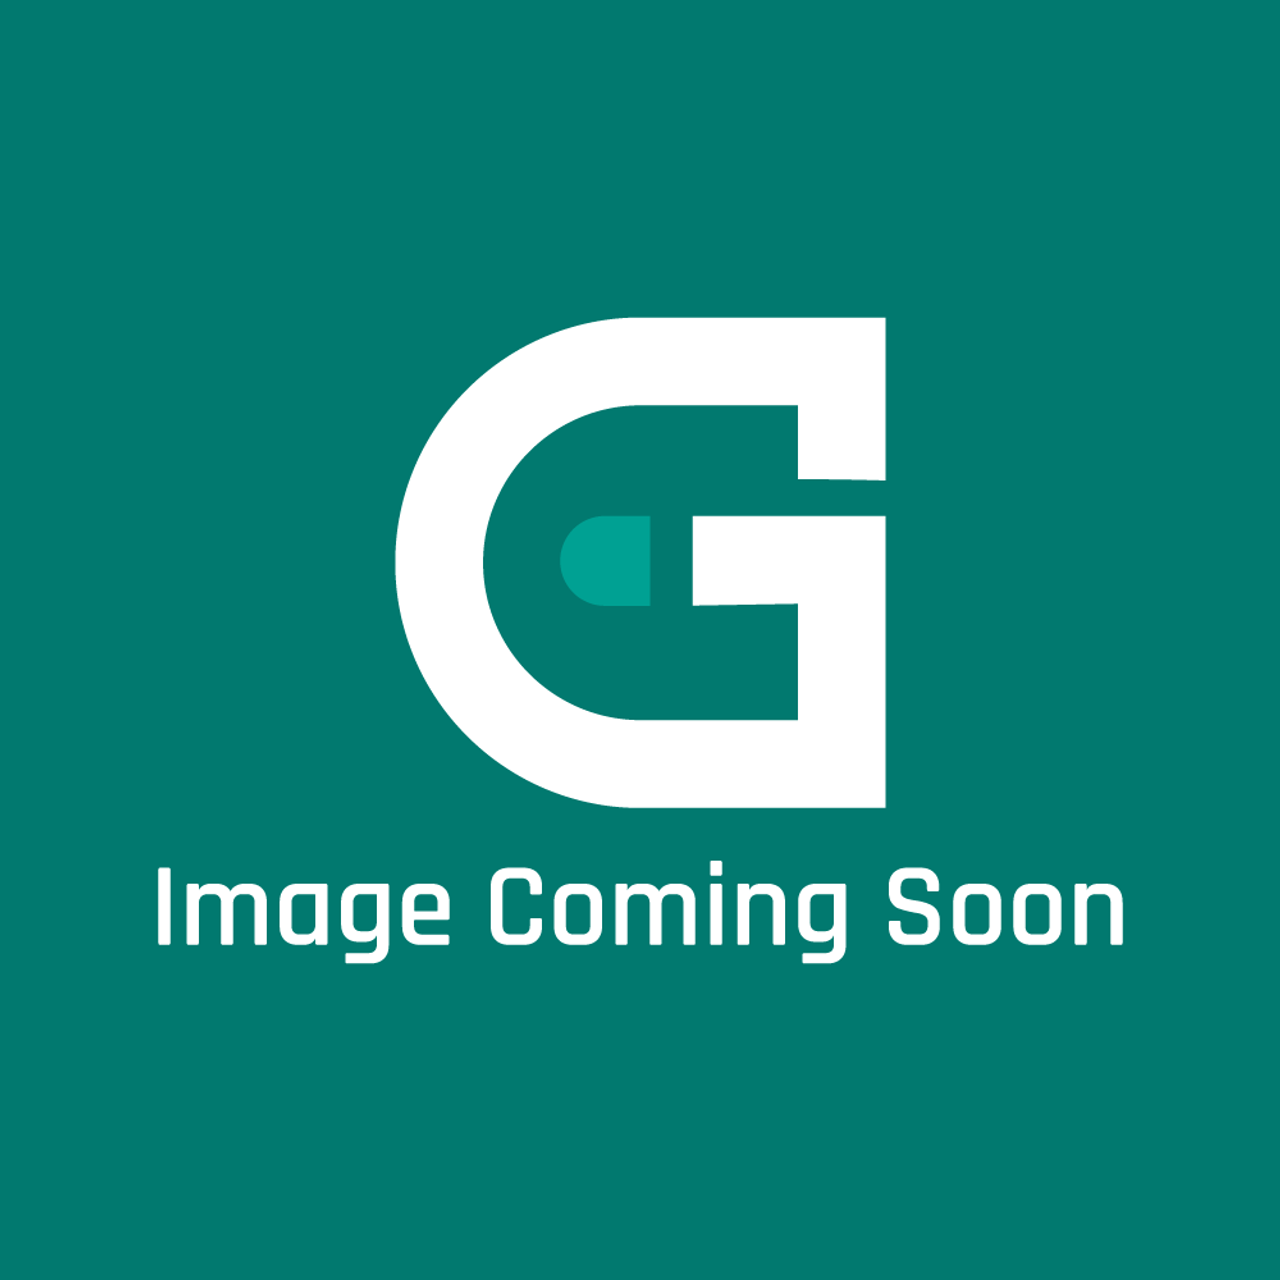 AGA Marvel RG4M313181 - Solenoid Ckr Burner Lpg Gd80 - Image Coming Soon!